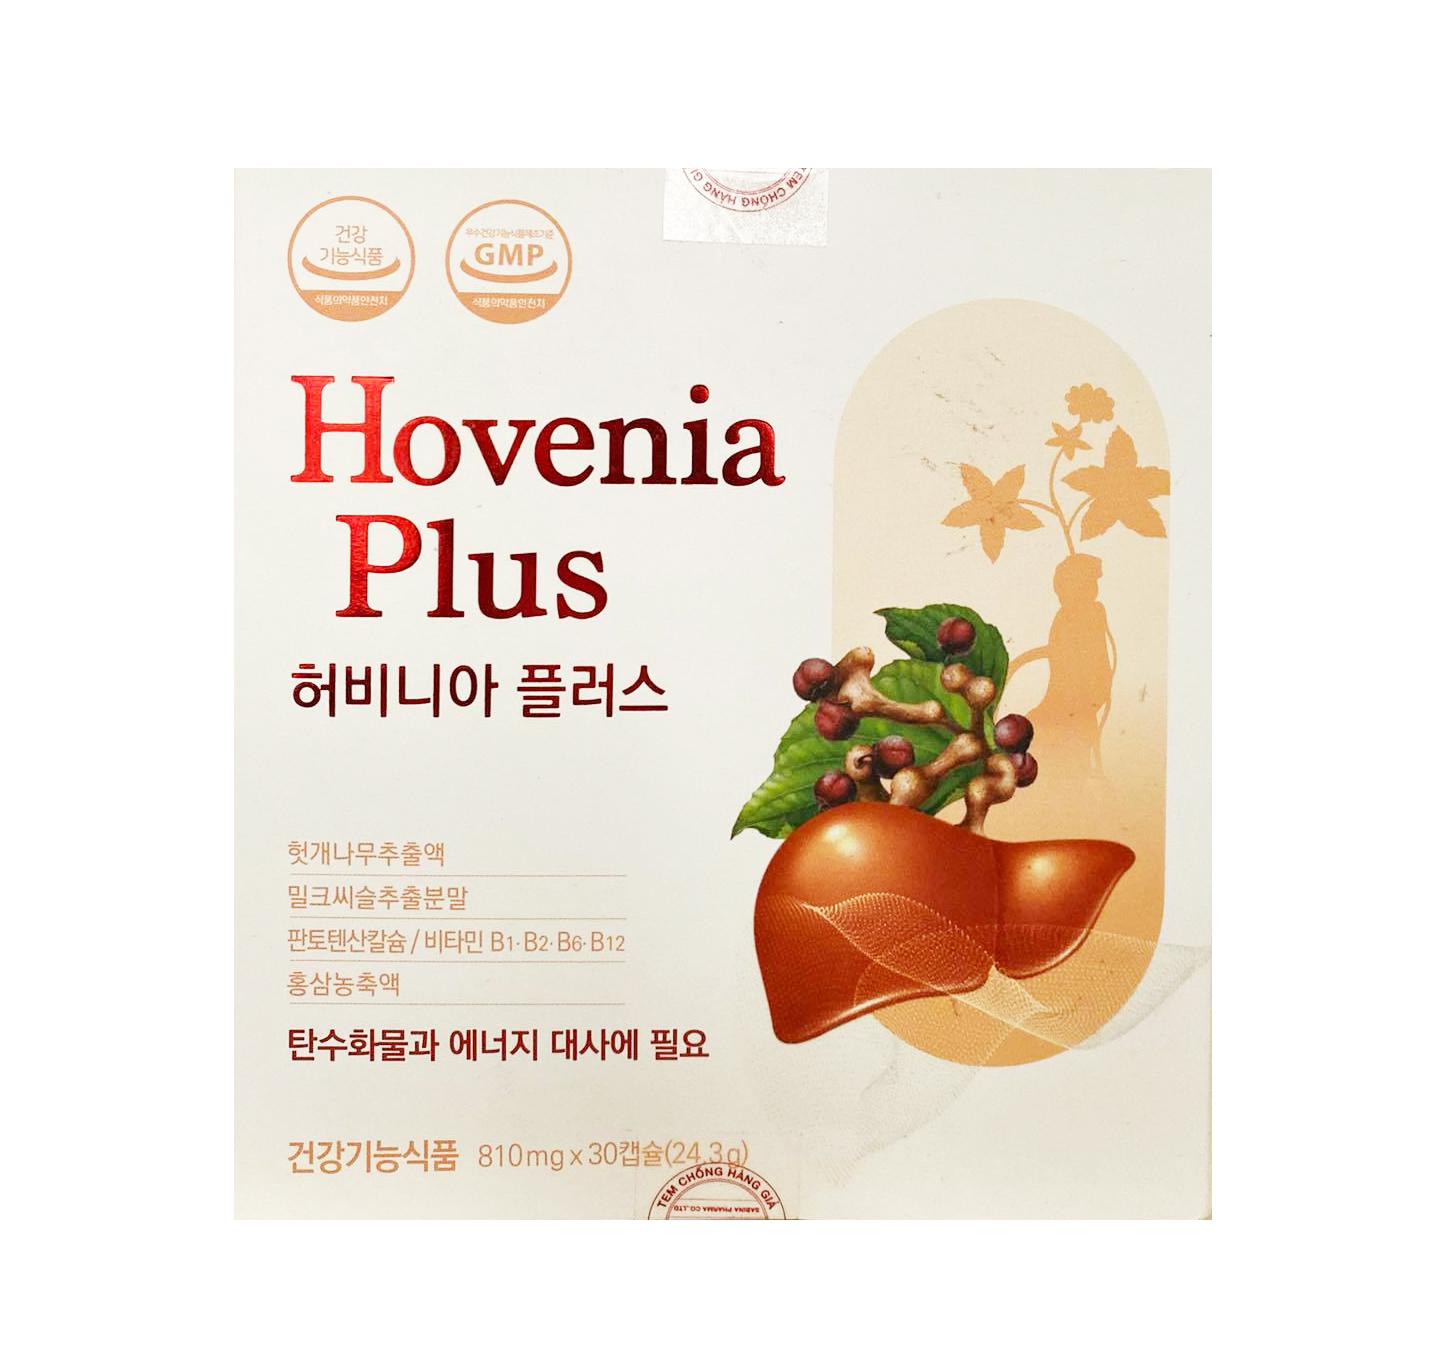 Viên uống Hovenia Plus hỗ trợ tăng cường chức năng gan hiệu quả